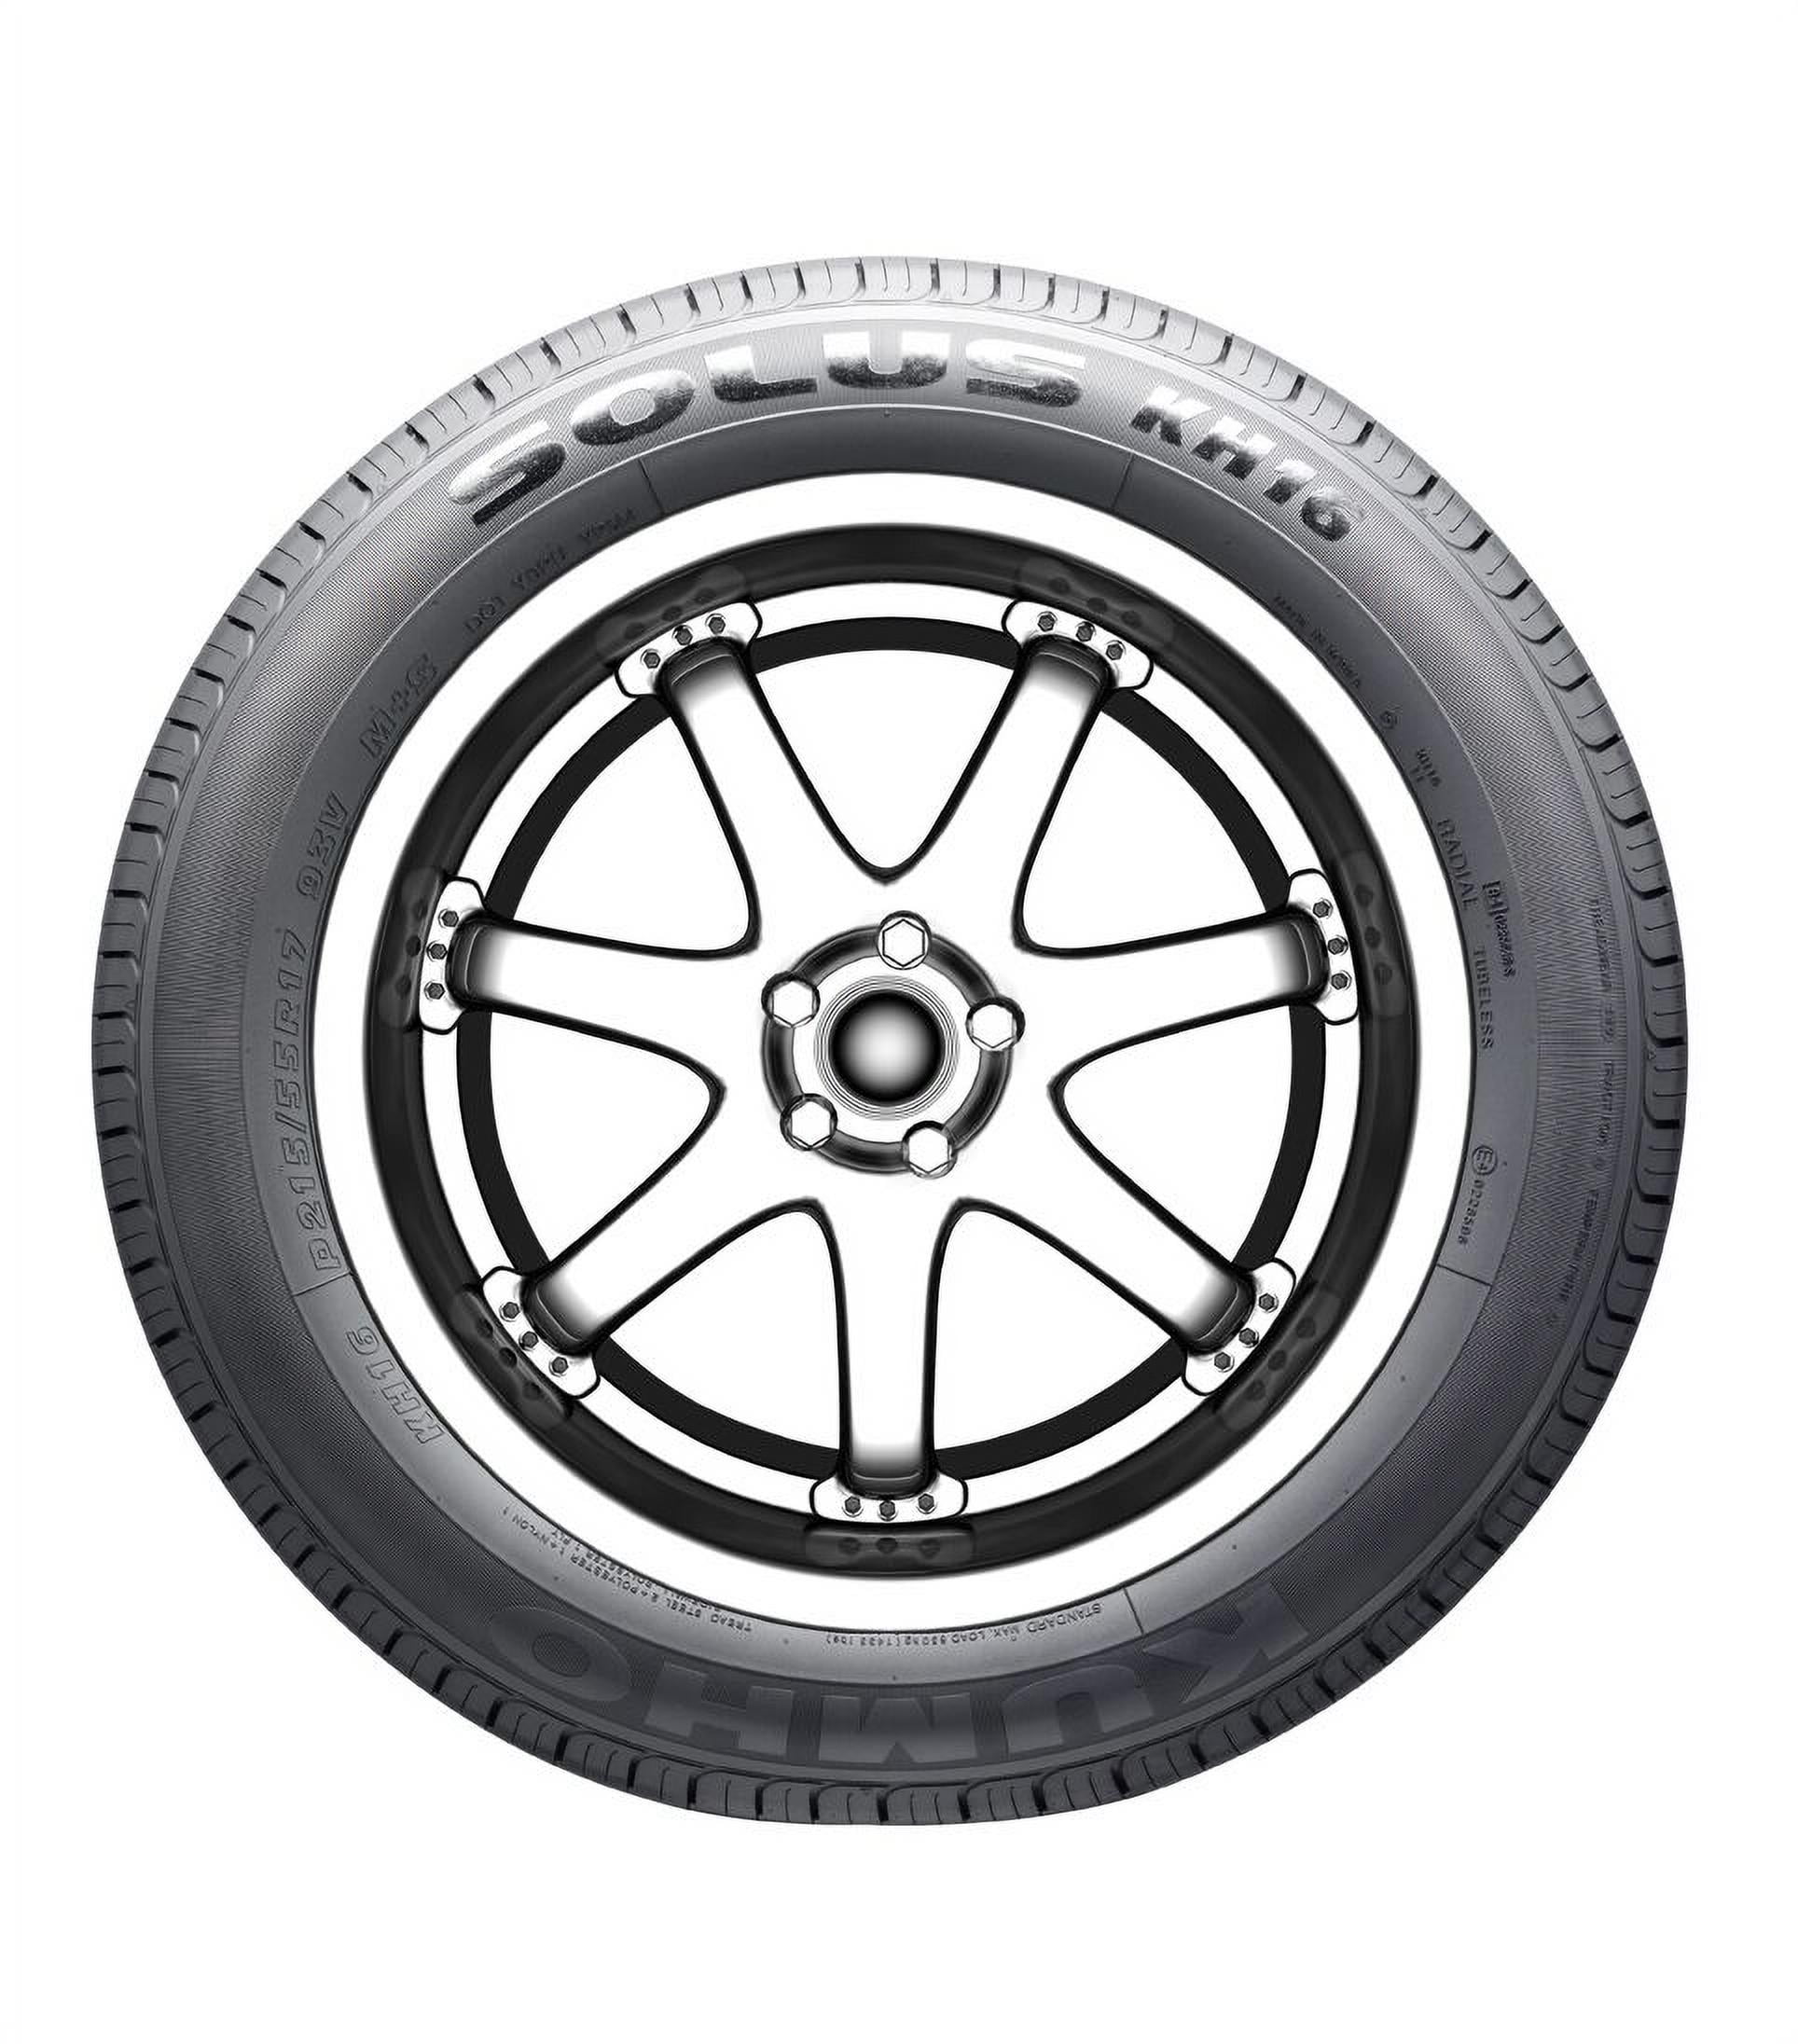 Kumho Solus KH16 All-Season Tire - 175/55R15 77T - Walmart.com